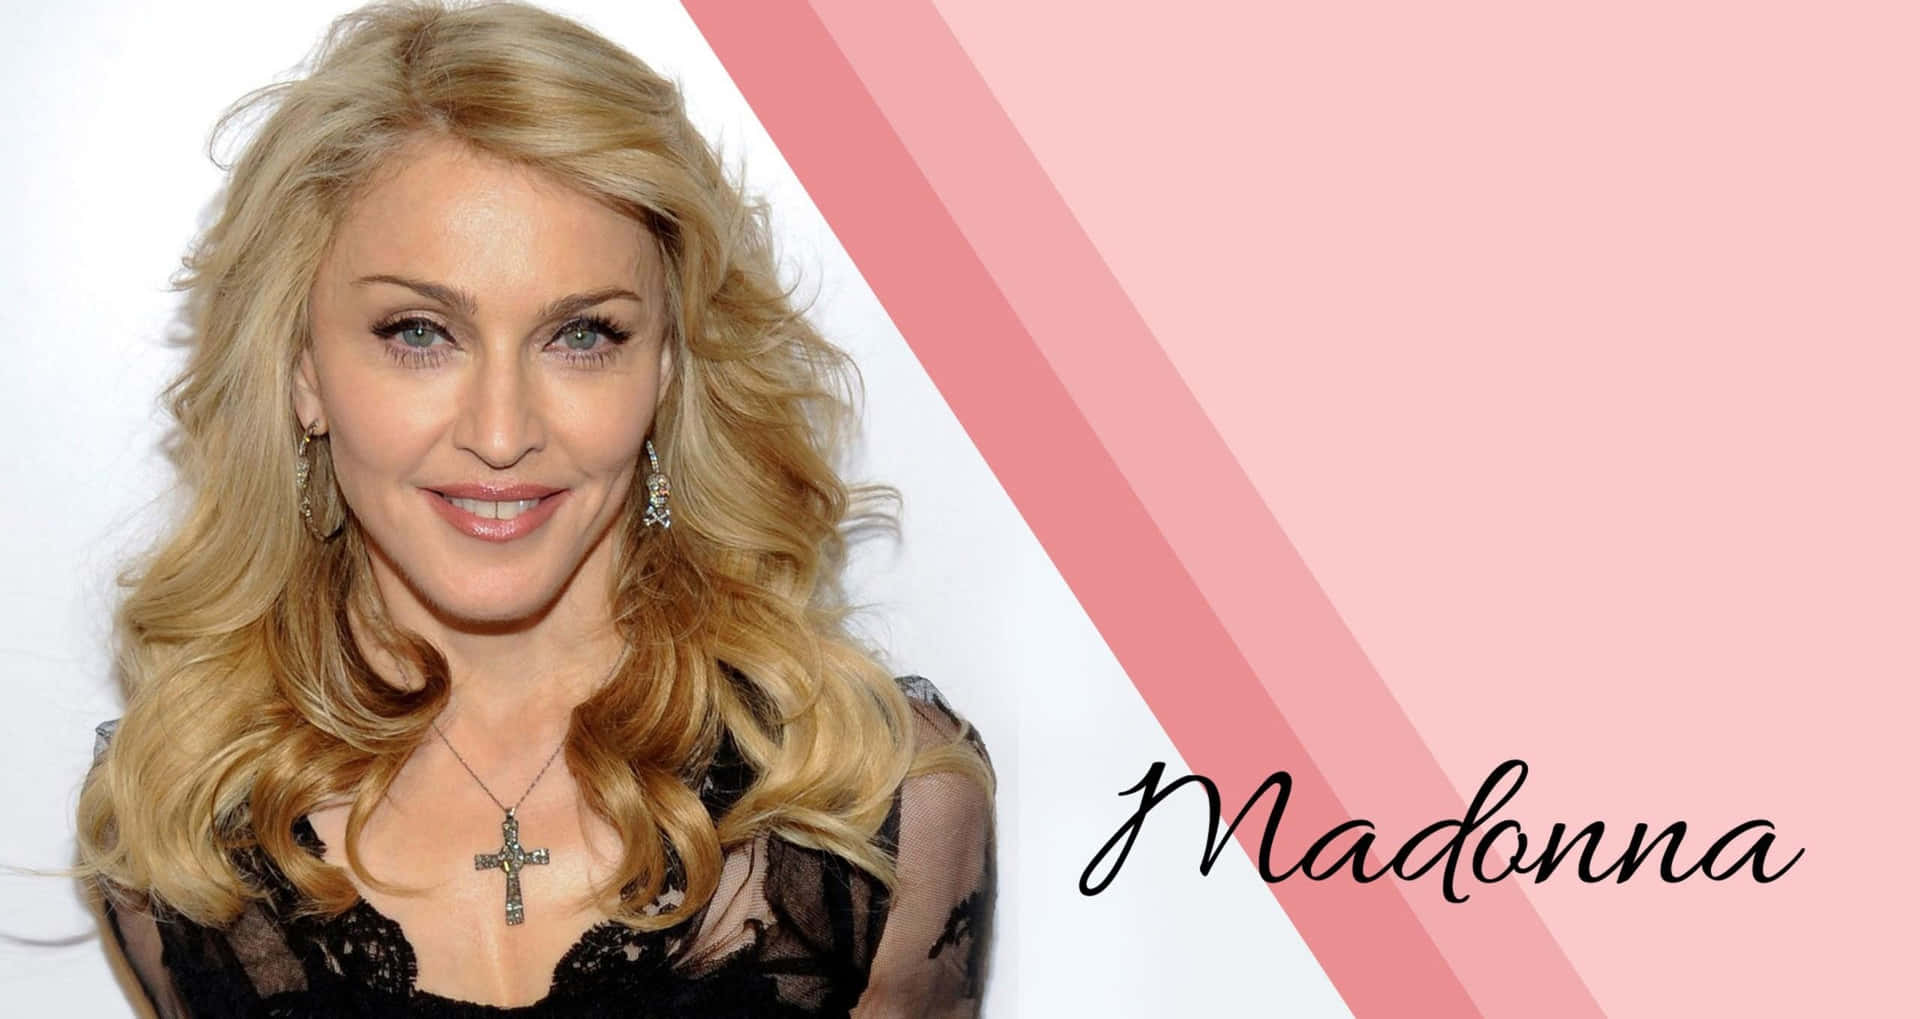 Madonnawikipedia